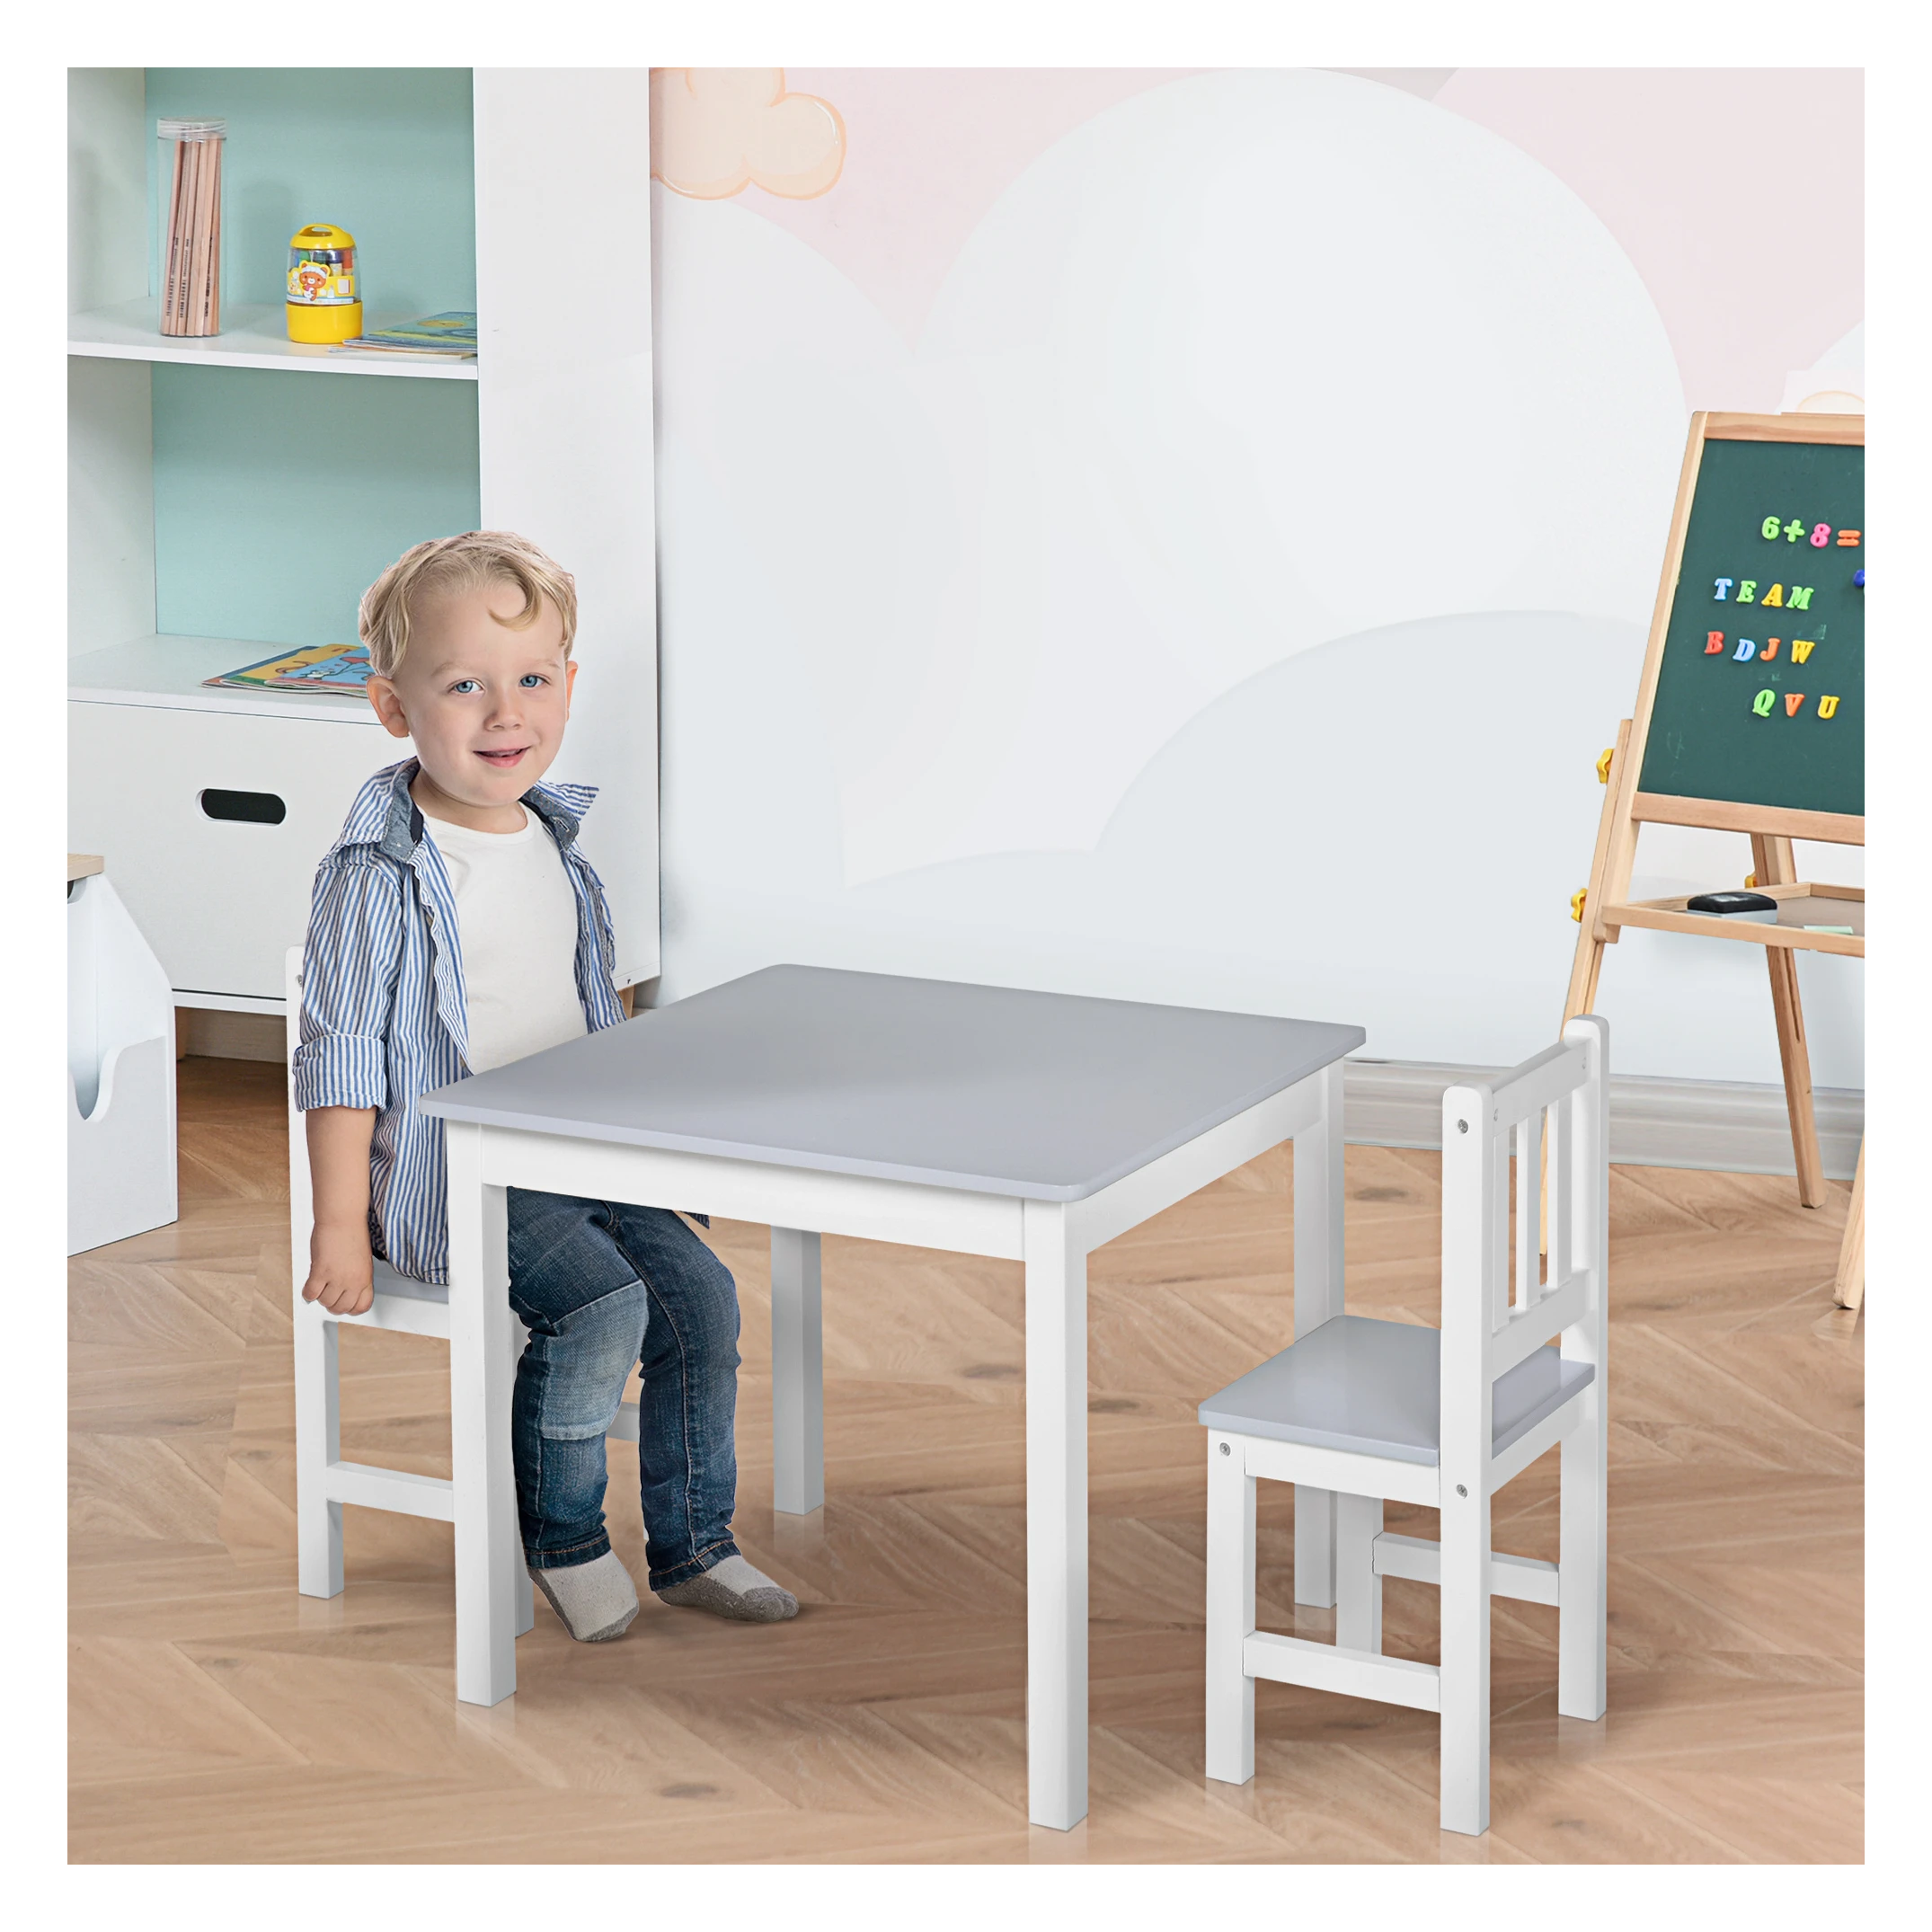 Niet modieus Pittig Maori 3-delige kinderzitgroep met kindertafel 2 stoelen voor 3+ kindermeubels  grenen + MDF grijs + wit 60 x 50 x 48 cm - SimpleDeal.nl